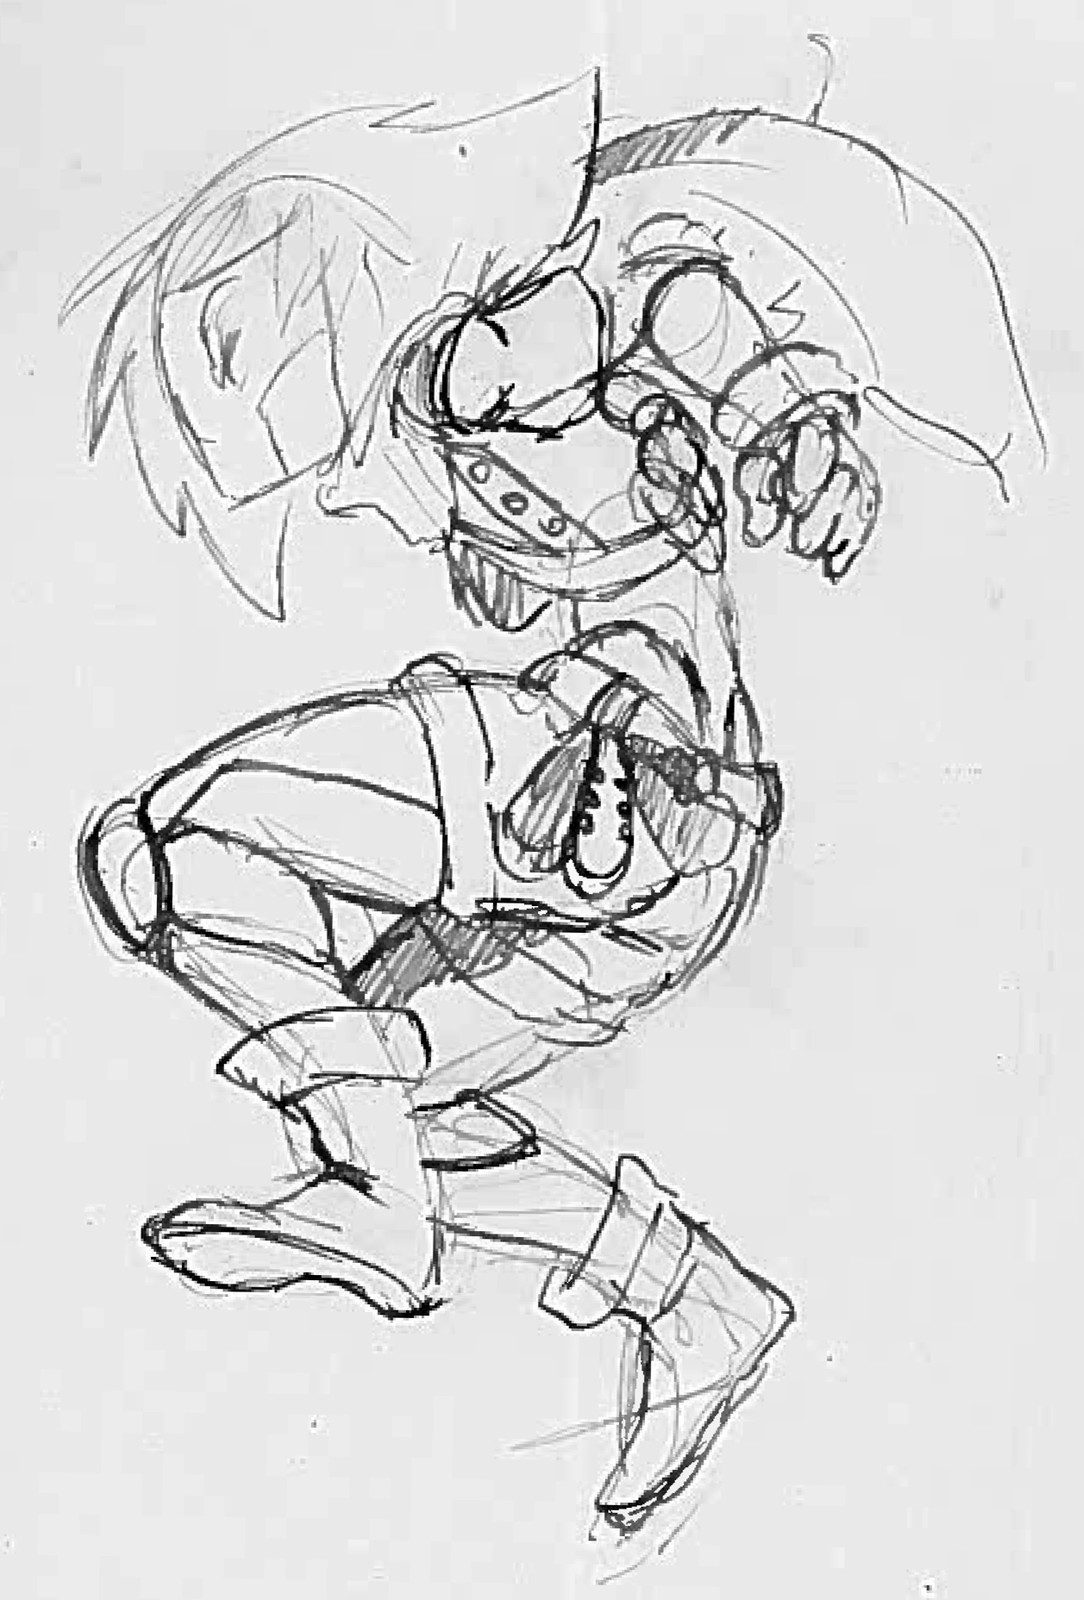 Final sketch for "RIWA the cyborg".